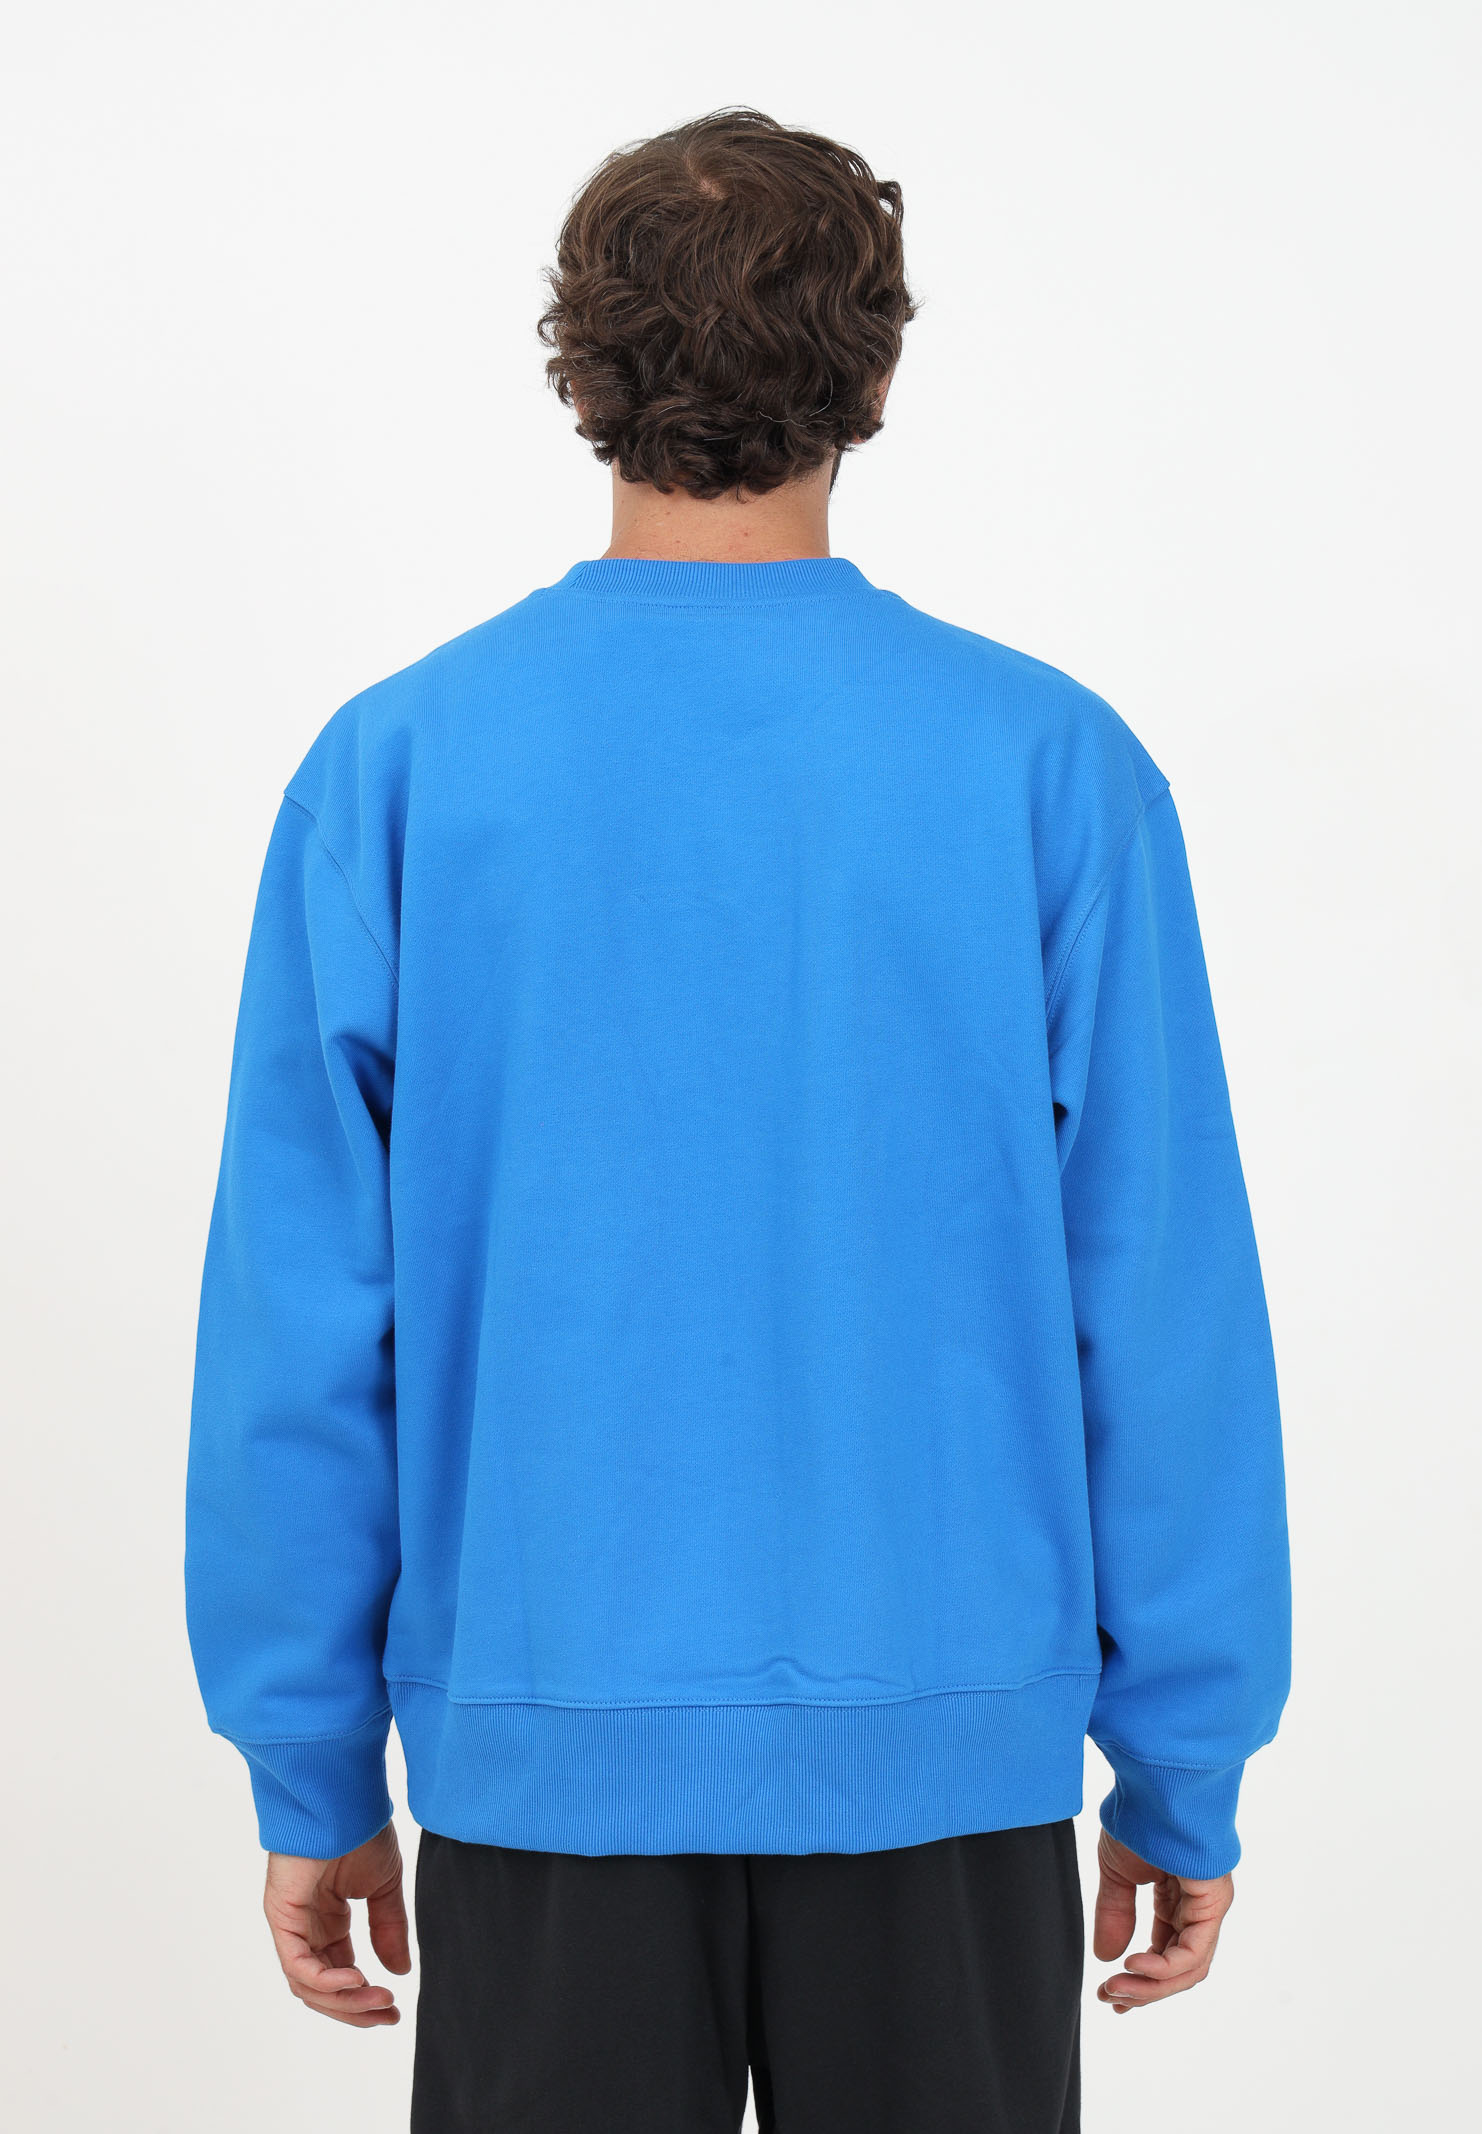 Adicolor Contempo Crew light blue sweatshirt for men ADIDAS ORIGINALS | IM2114.